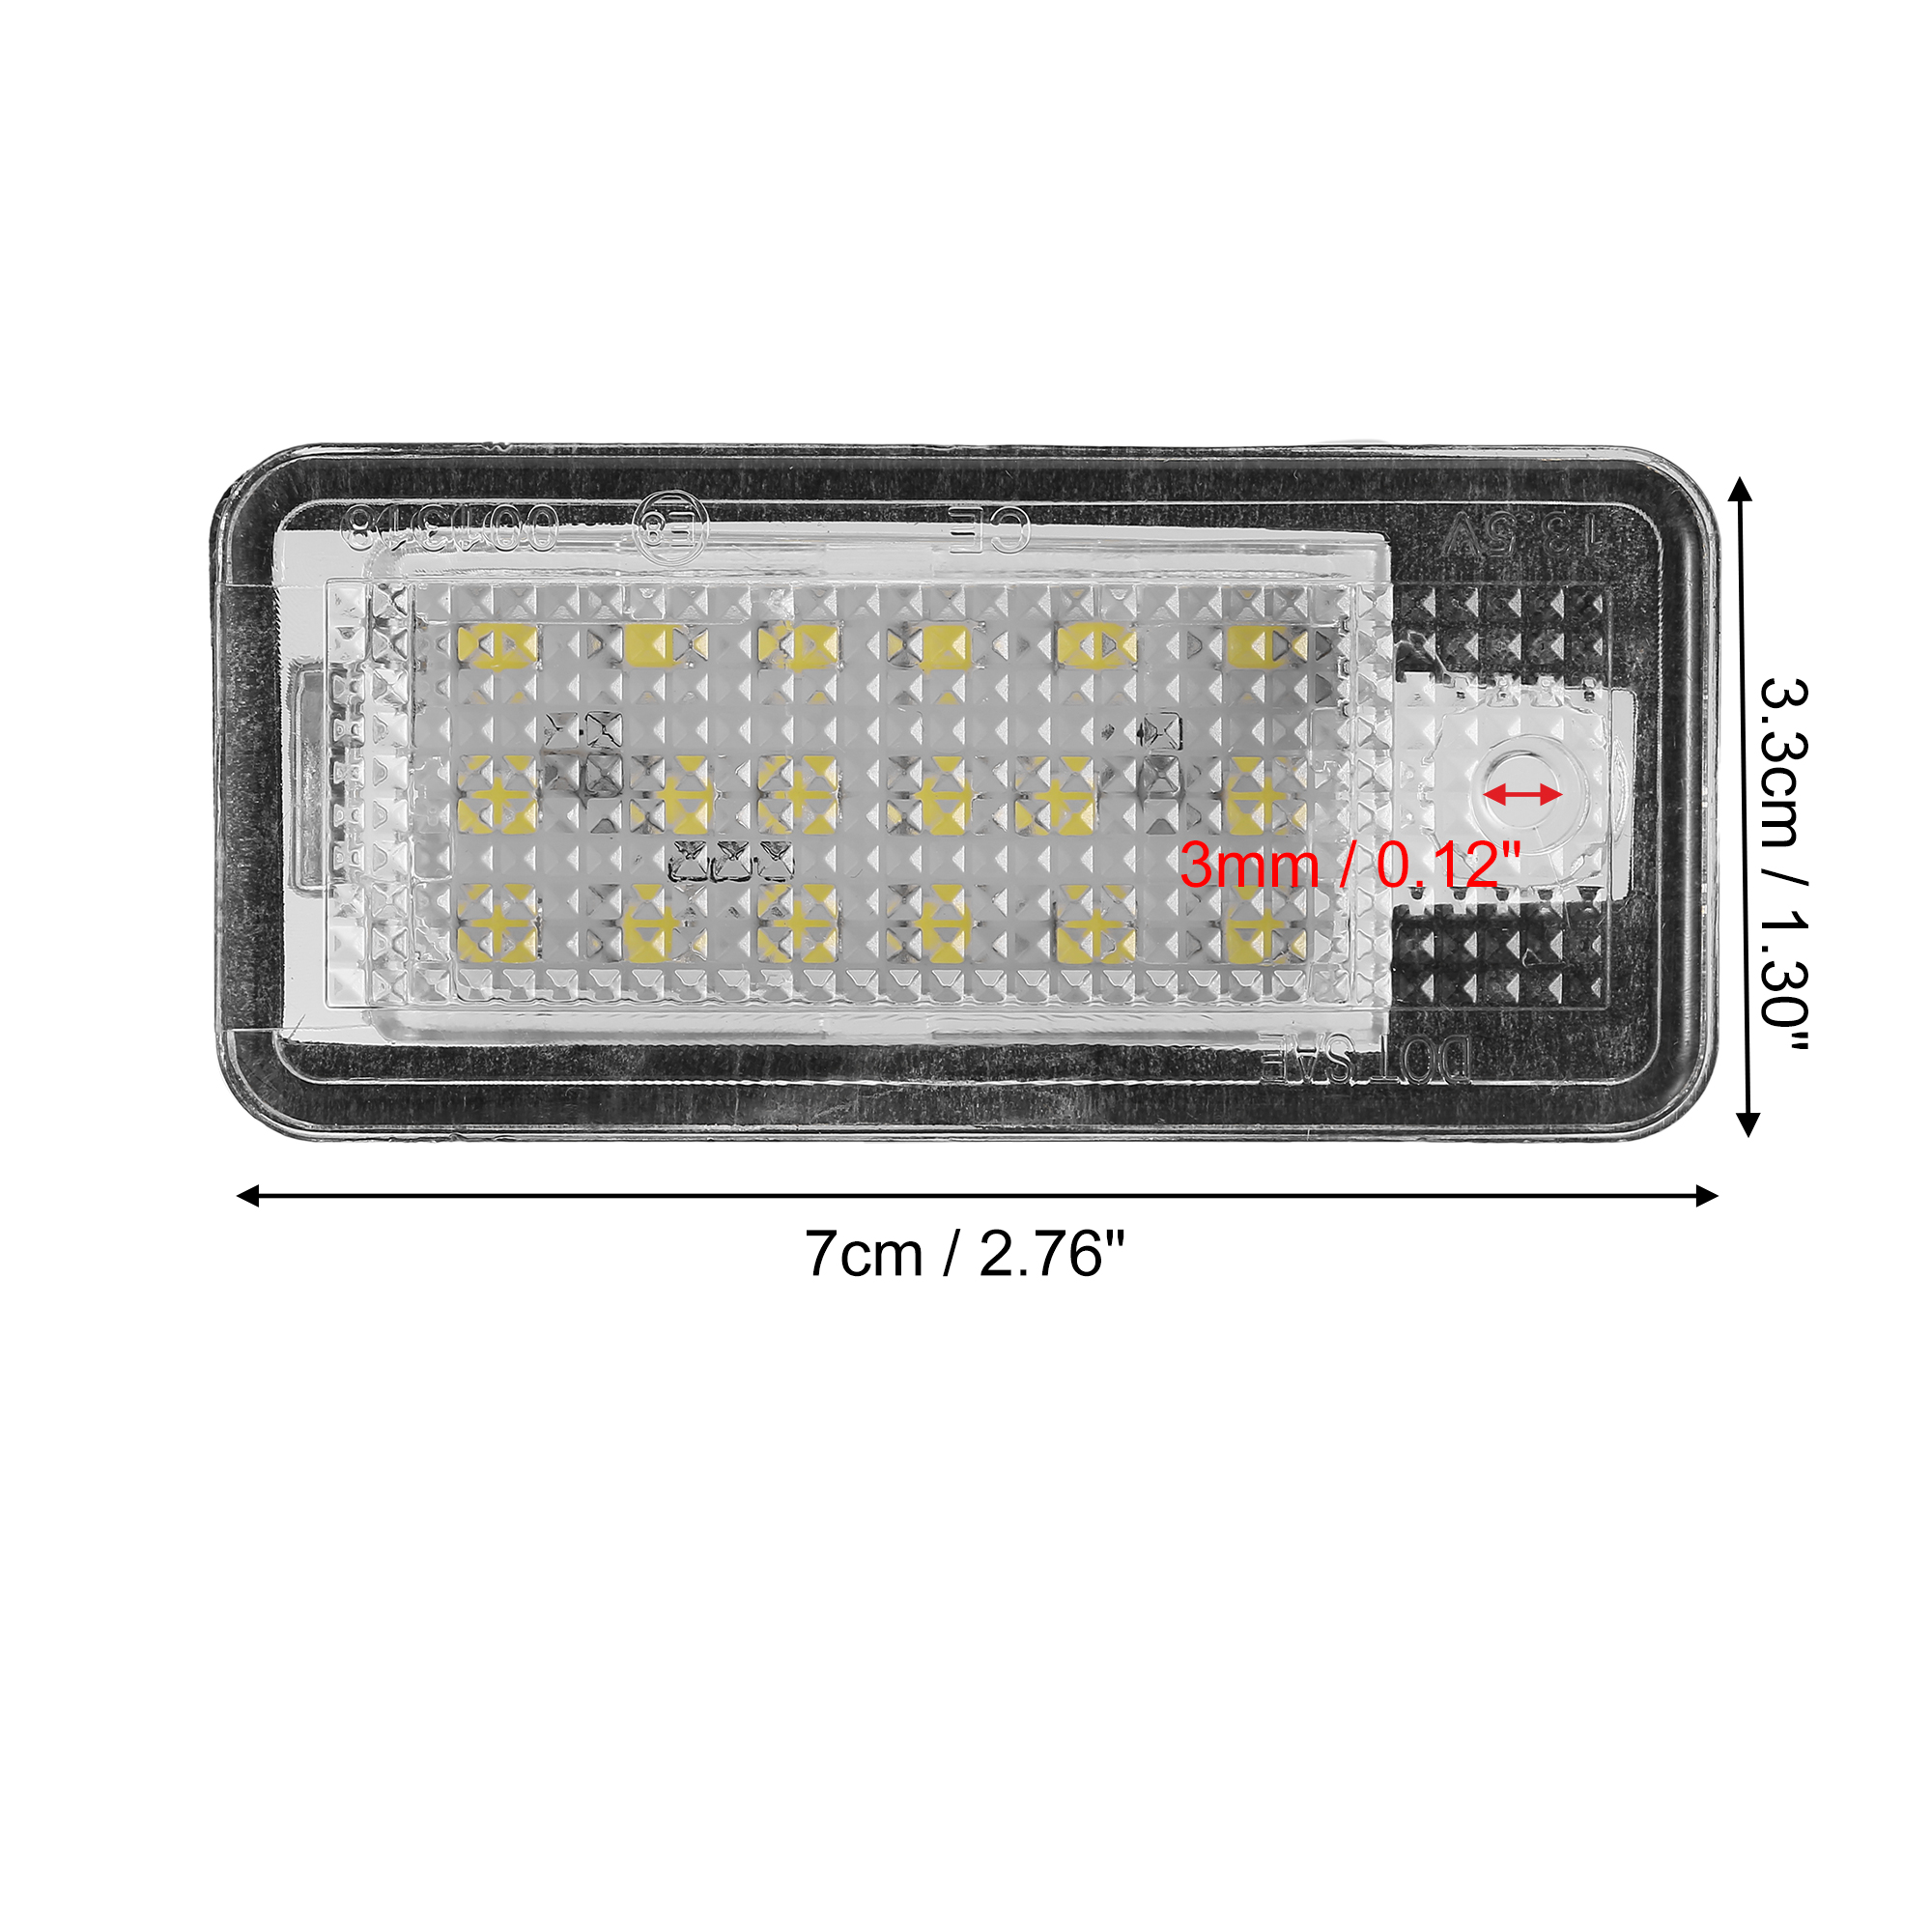 Unique Bargains 2pcs LED License Plate Light White Light for Audi A3 S3 A4 S4 A5 S5 A6 S6 A8 S8